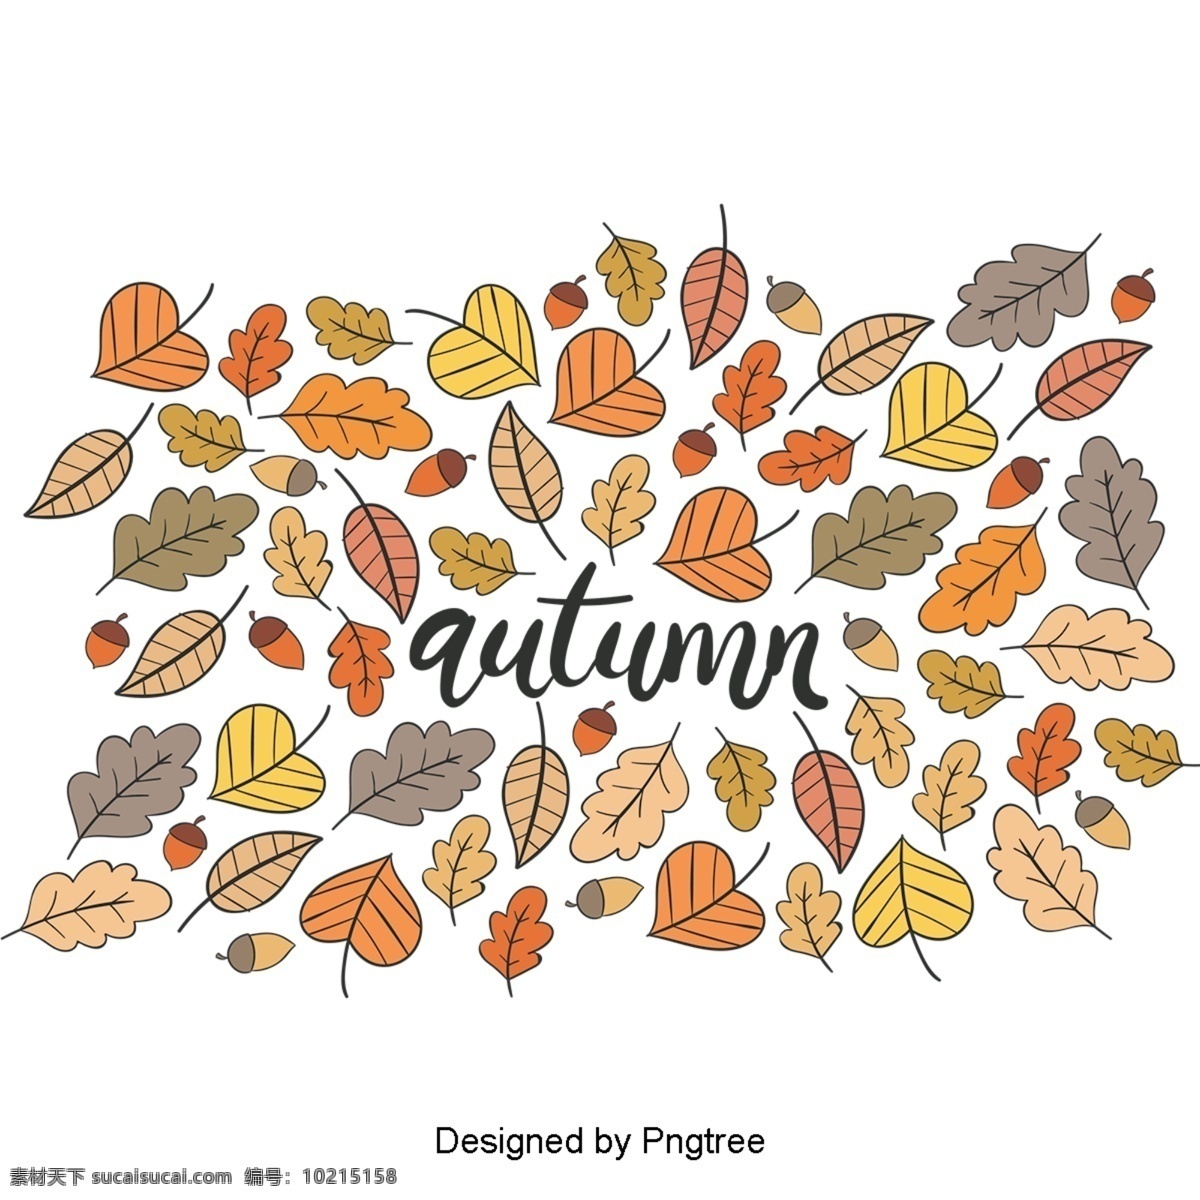 卡通 简单 手绘 秋叶 图案 简约 季节 秋天 树叶 植物 自然 装饰设计